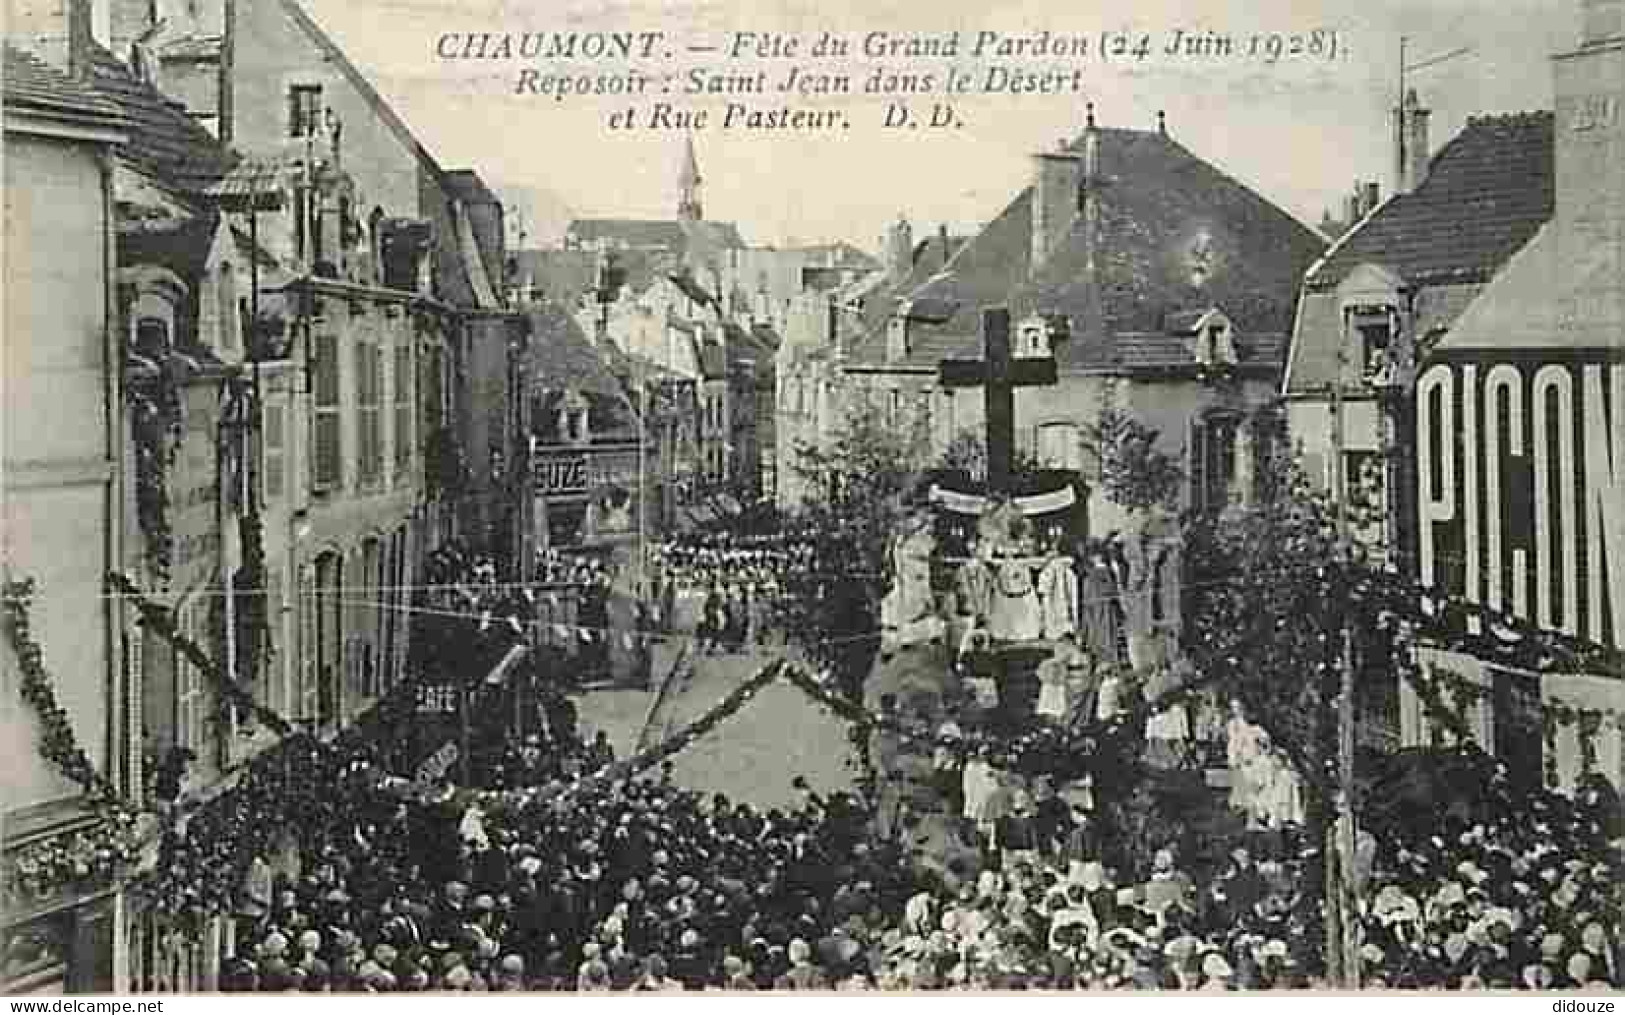 52 - Chaumont - Fete Du Grand Pardon - 24 Juin 1928 - Reposoir - St Jean Dans Le Désert Et Rue Pasteur - Animée - CPA -  - Chaumont